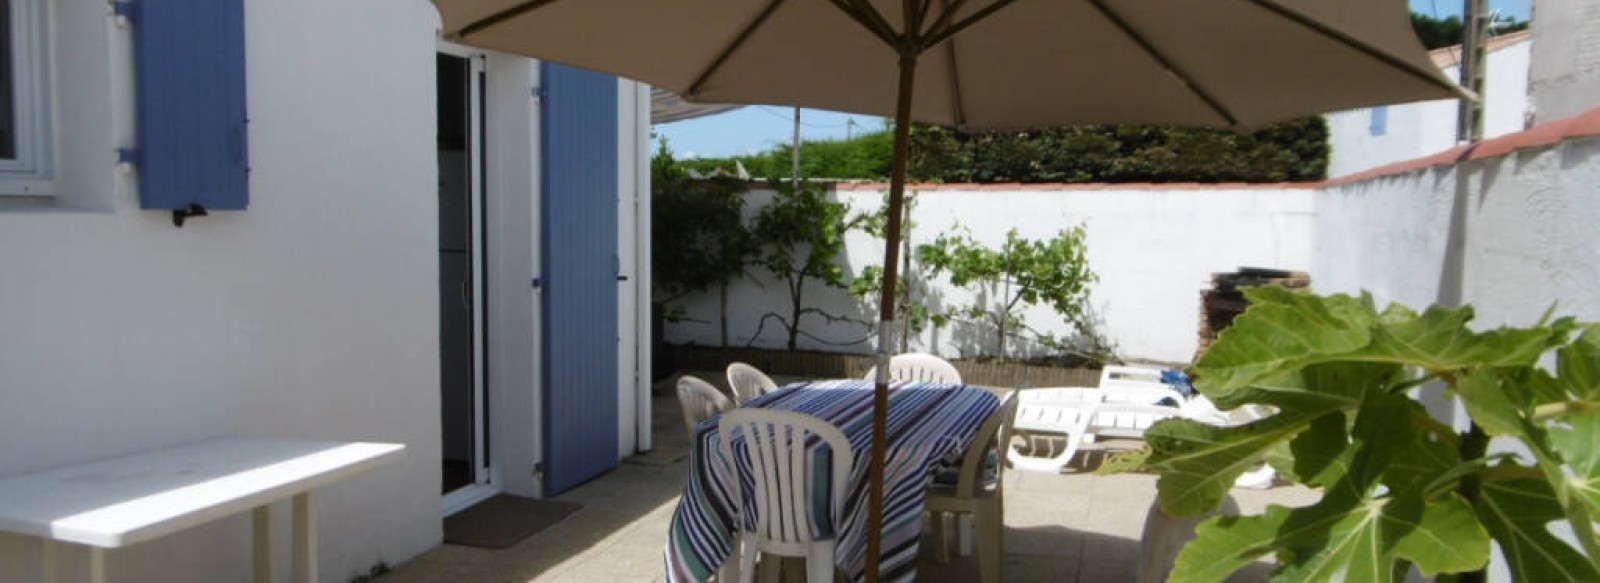 Agreable maison de vacances entre le bourg et les plages a Noirmoutier en l'ile